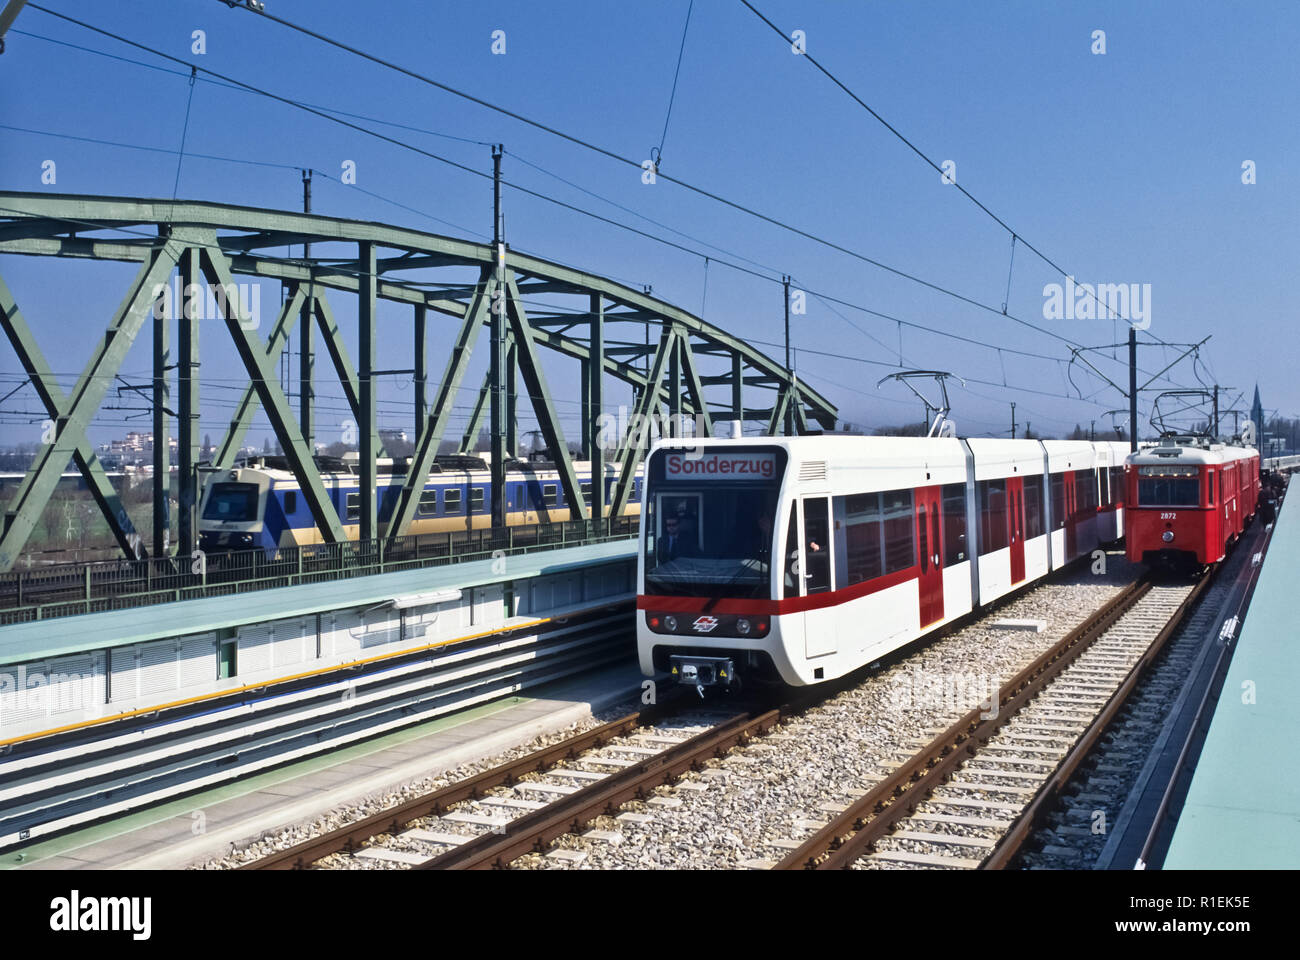 Wien, U6 Nord, Pressefahrt mit moderner U-Bahn-Garnitur und historischem Stadtbahnzug, daneben ÖBB-Schnellbahnzug Foto Stock